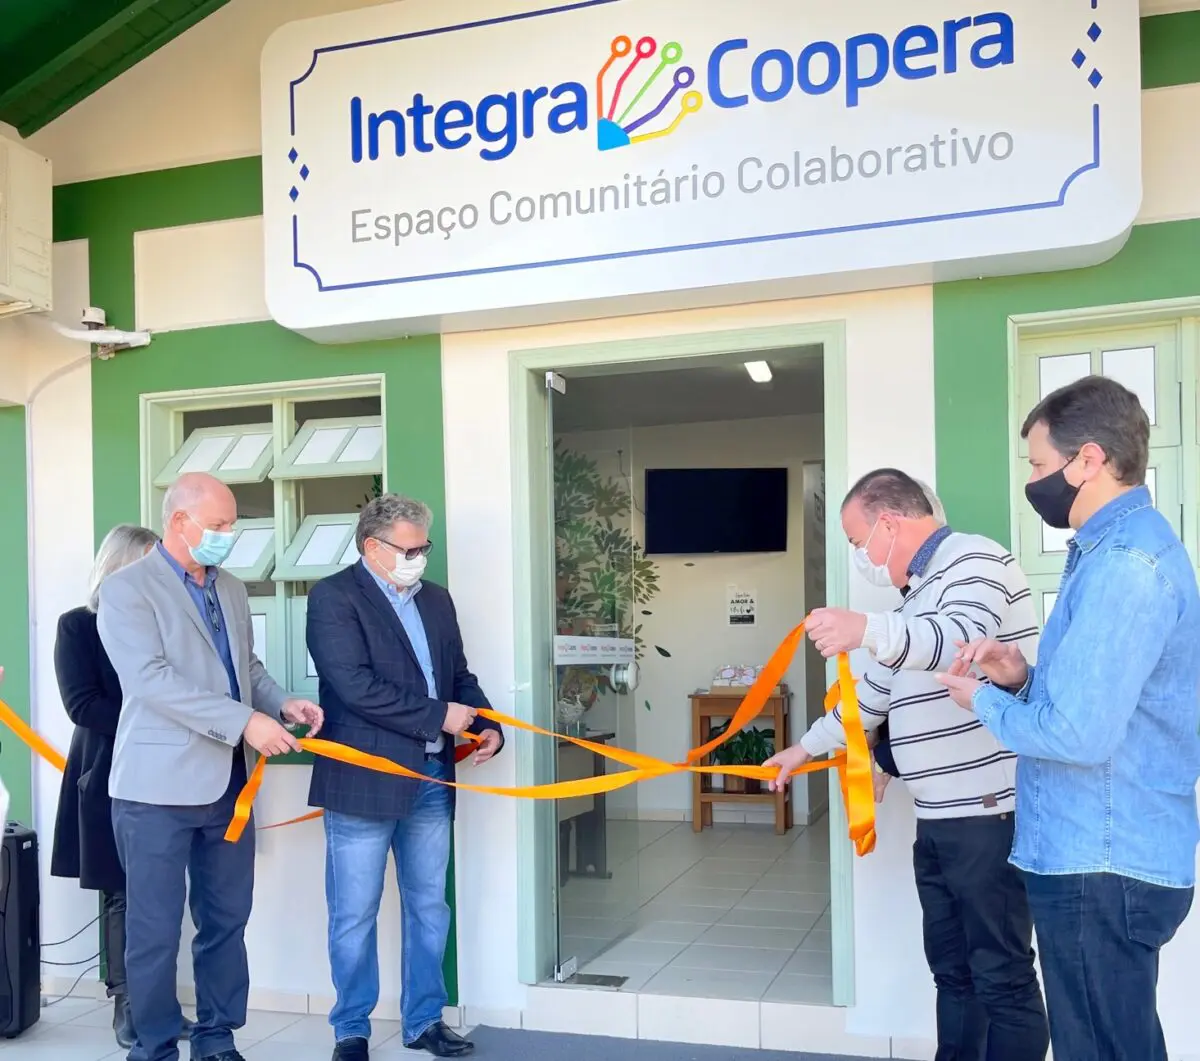 Integra Coopera abre as portas para a comunidade